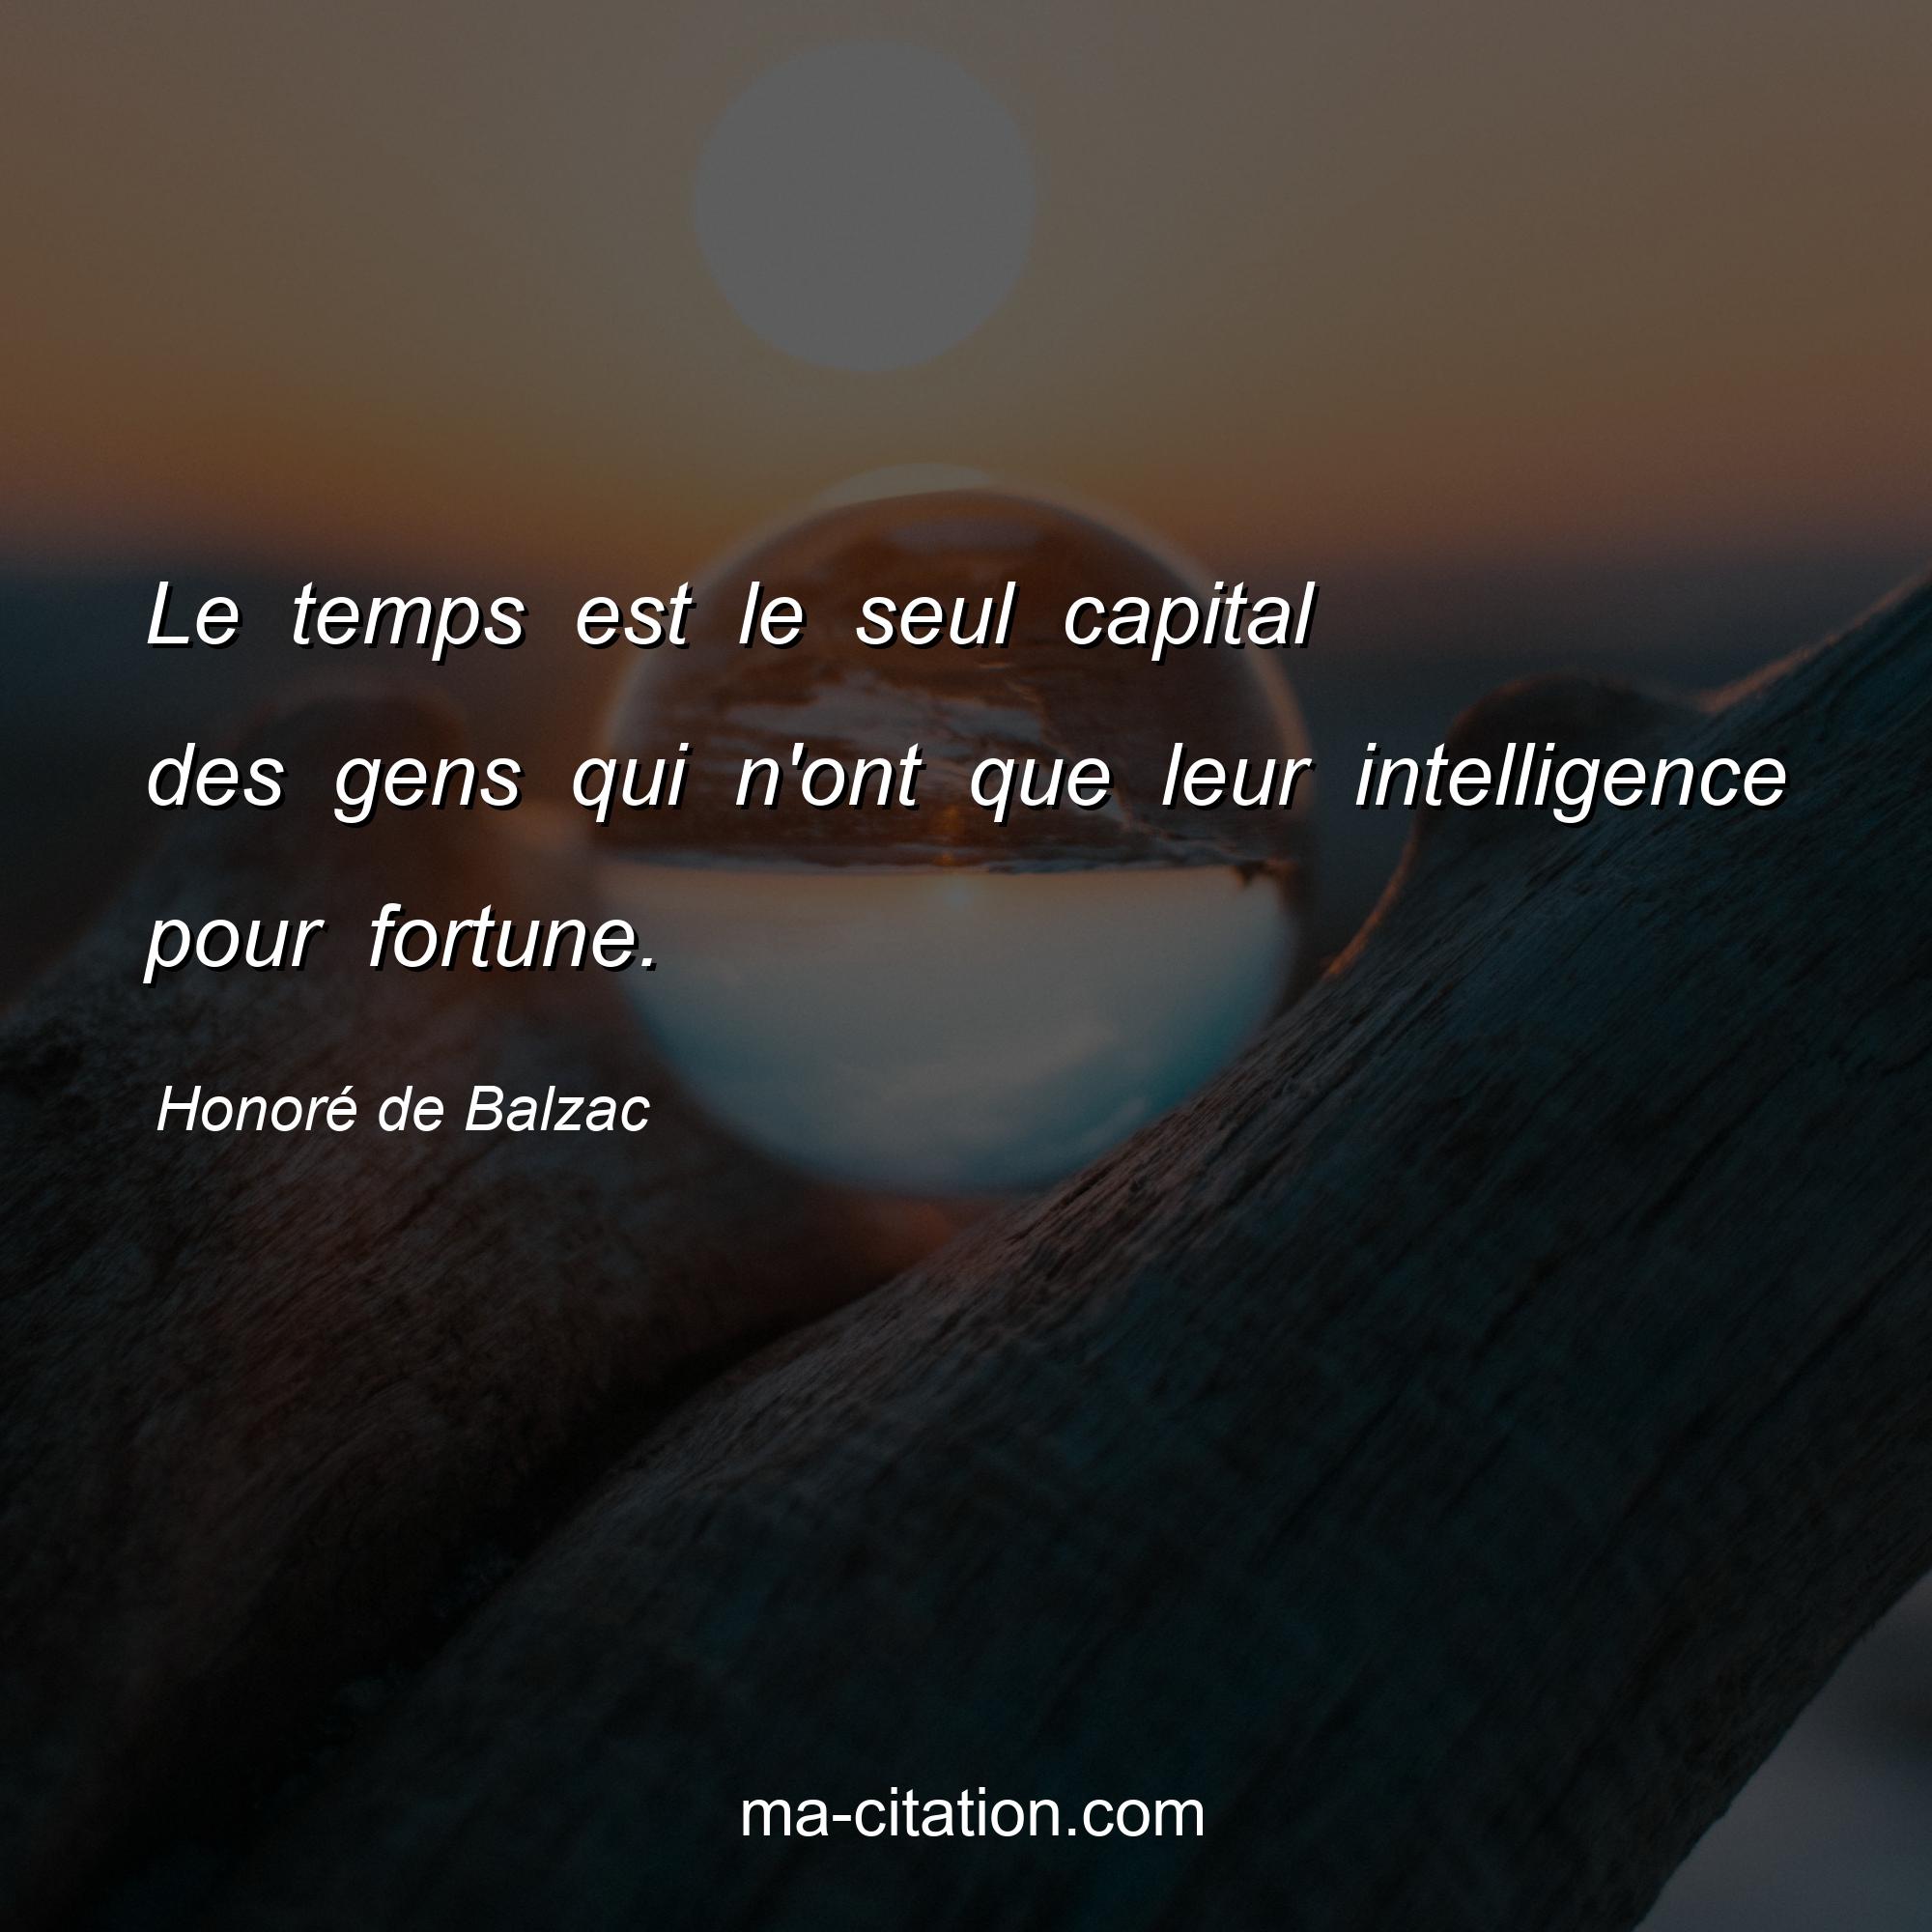 Honoré de Balzac : Le temps est le seul capital des gens qui n'ont que leur intelligence pour fortune.